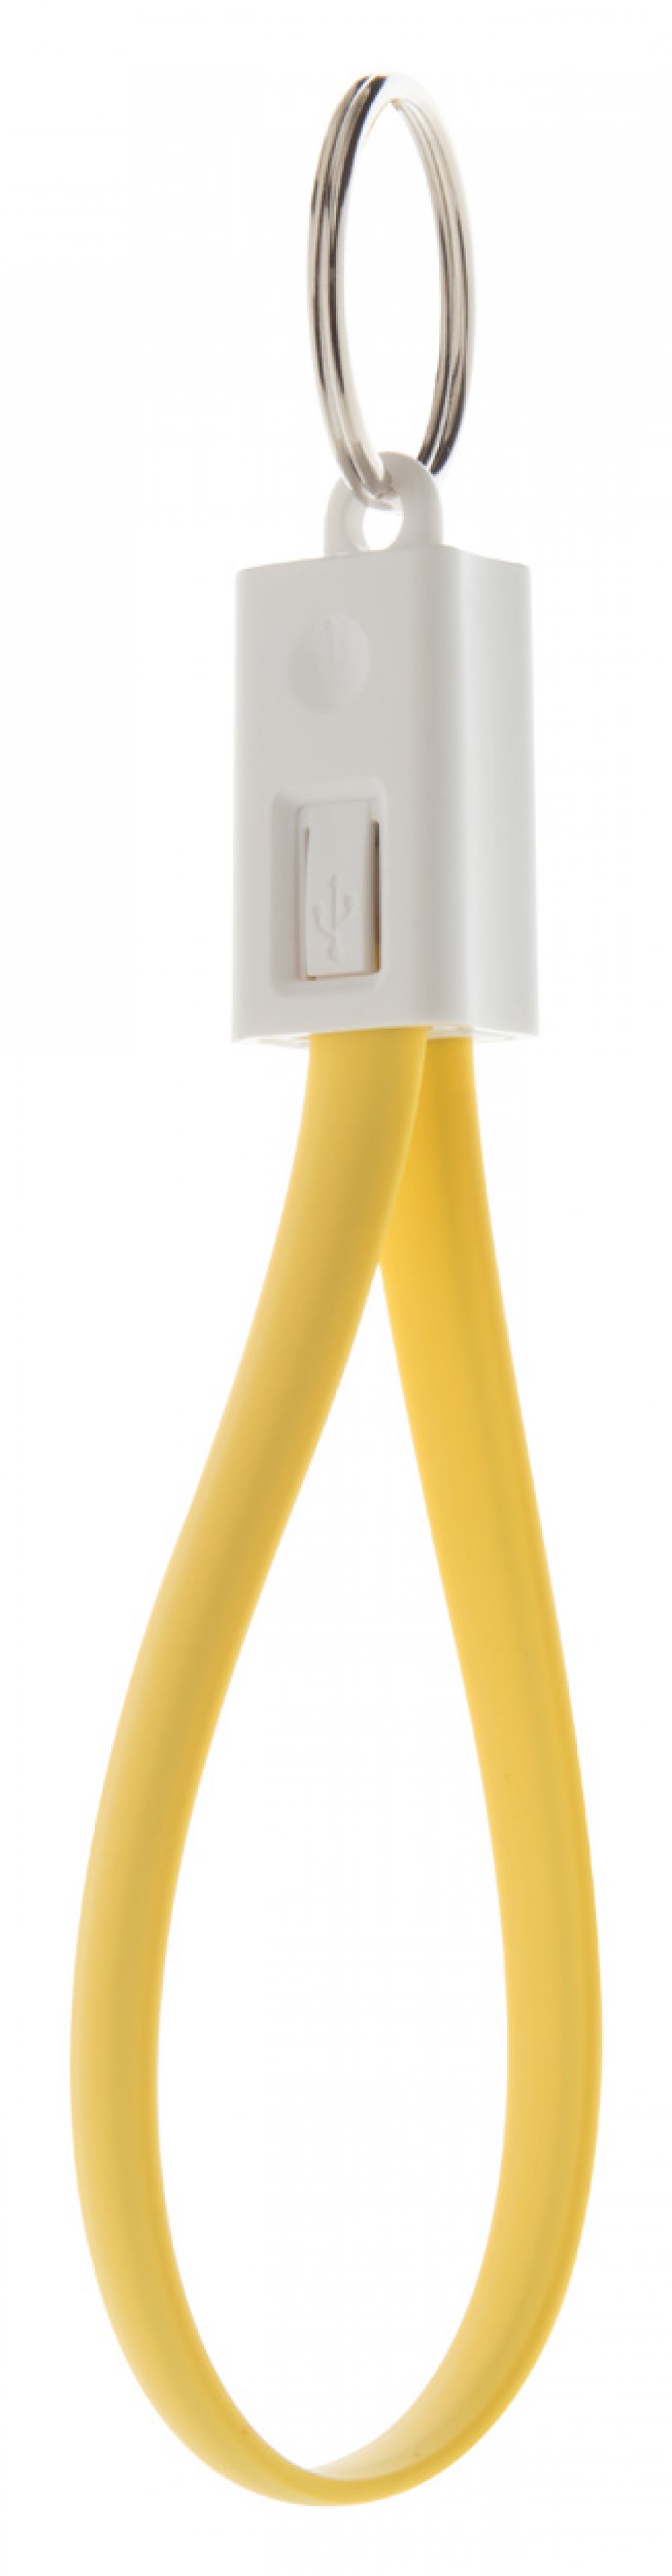 "Pirten" uSB kabel v přívěsku na klíče, žlutá